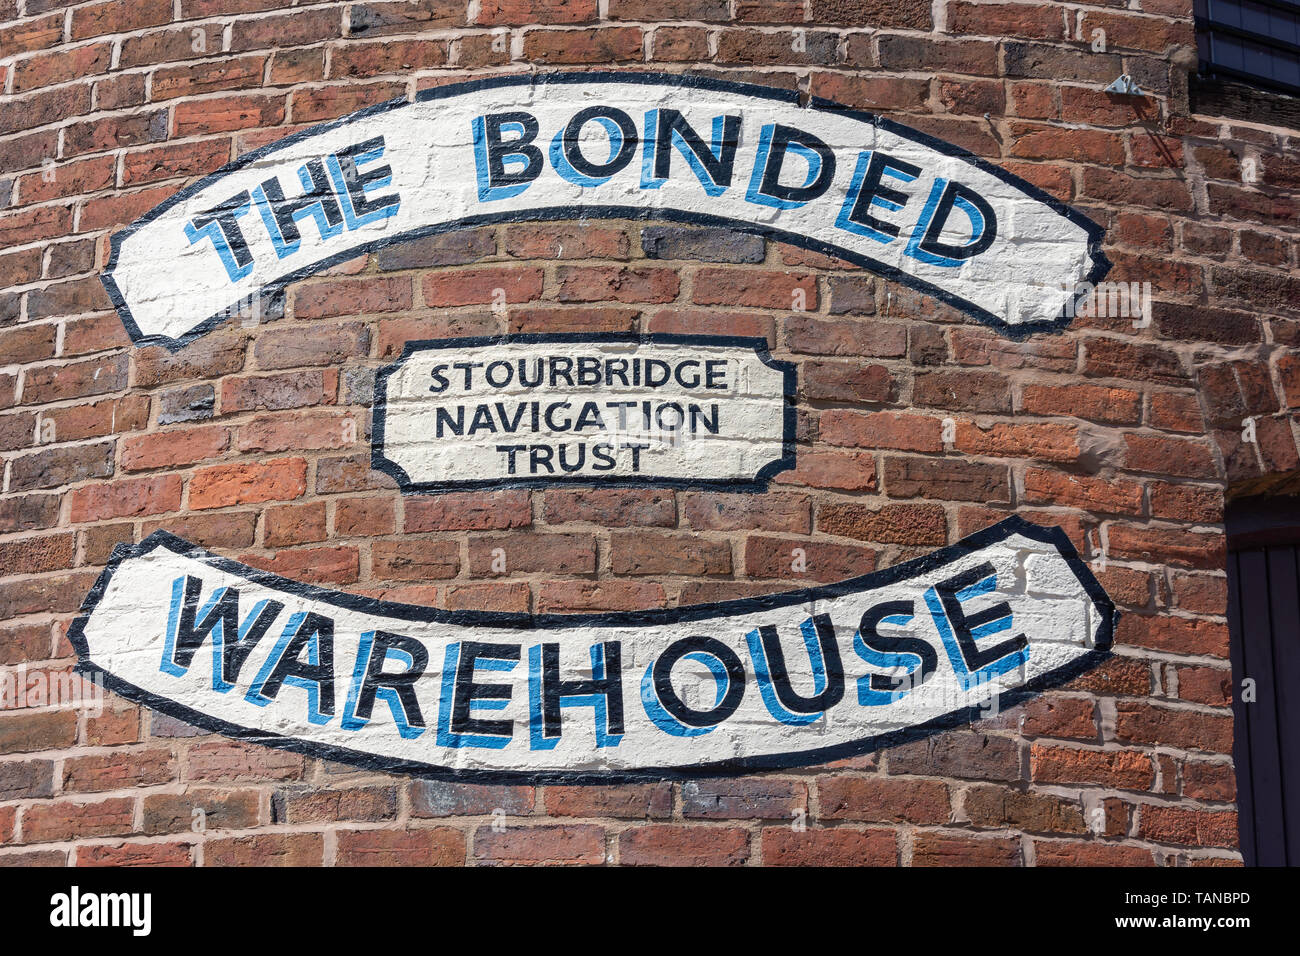 The Bonded Warehouse sign, Canal Street, Stourbridge, West Midlands, England, United Kingdom Stock Photo